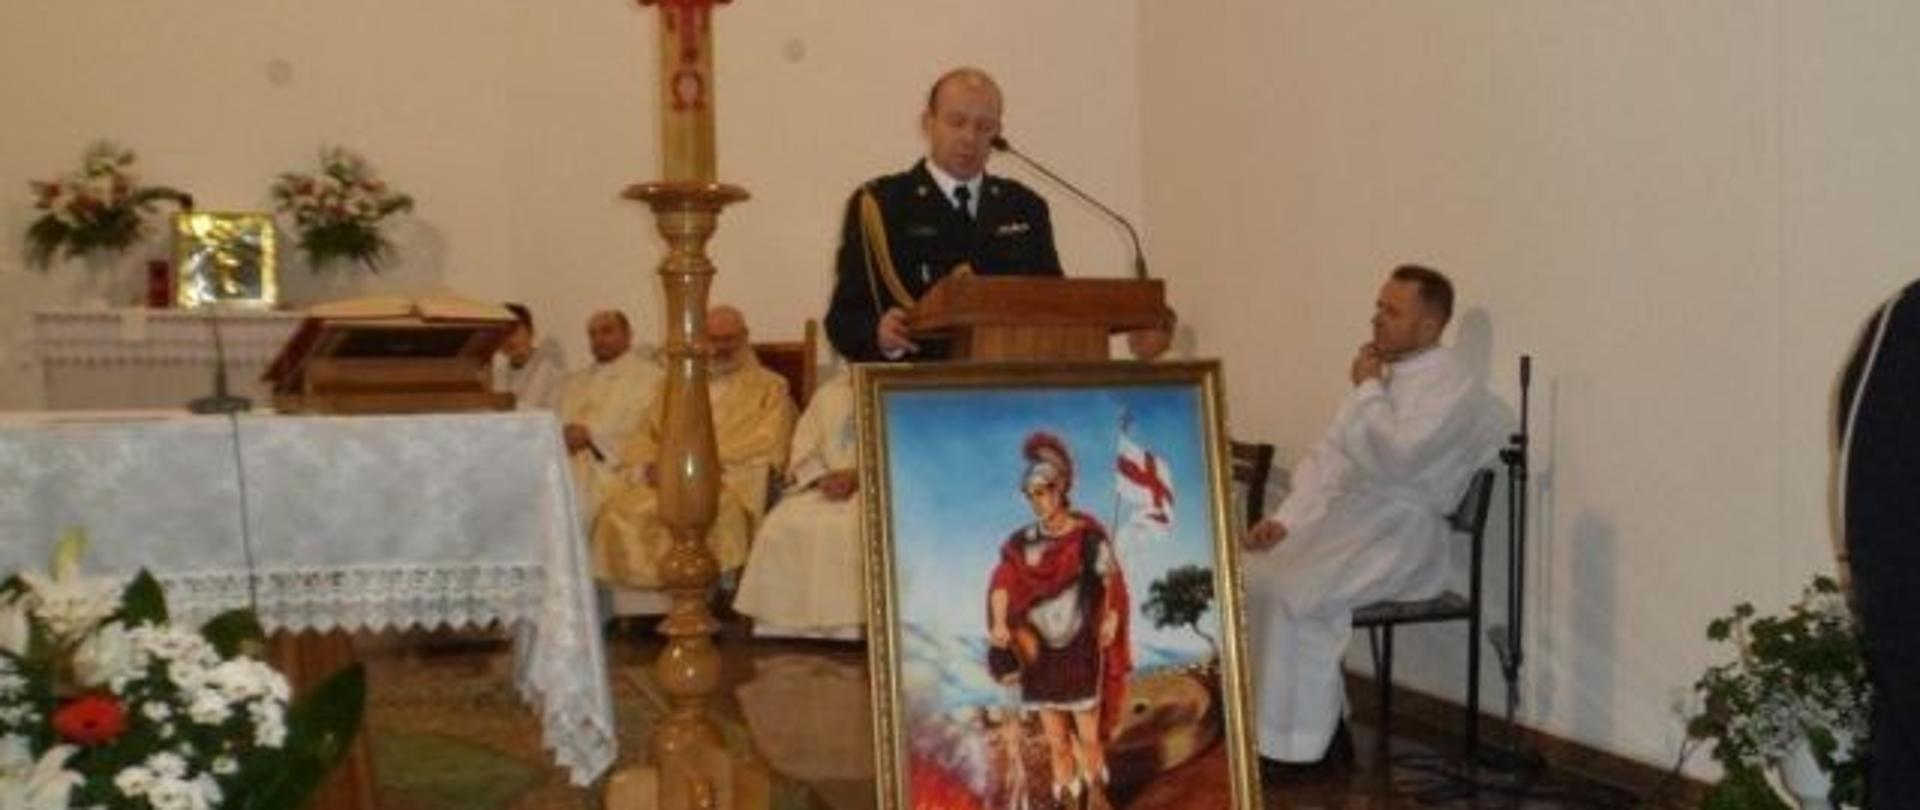 umundurowany strażak stojący przy mikrofonie na ołtarzu w kościele, przed nim stojący obraz św. Floriana, po lewej strona zapalona świeca